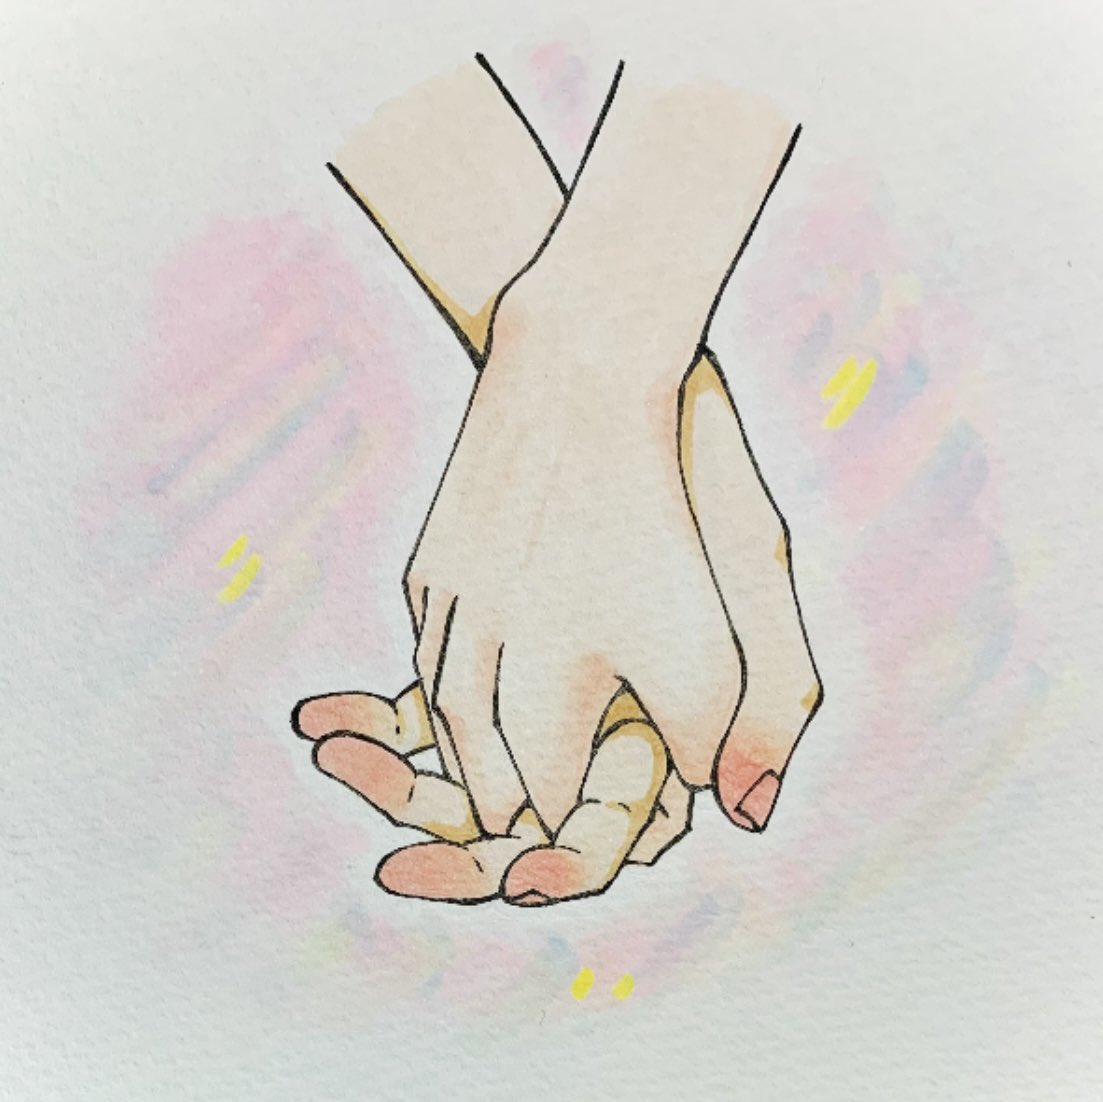 holding hands pink nails fingernails traditional media 1girl out of frame simple background  illustration images